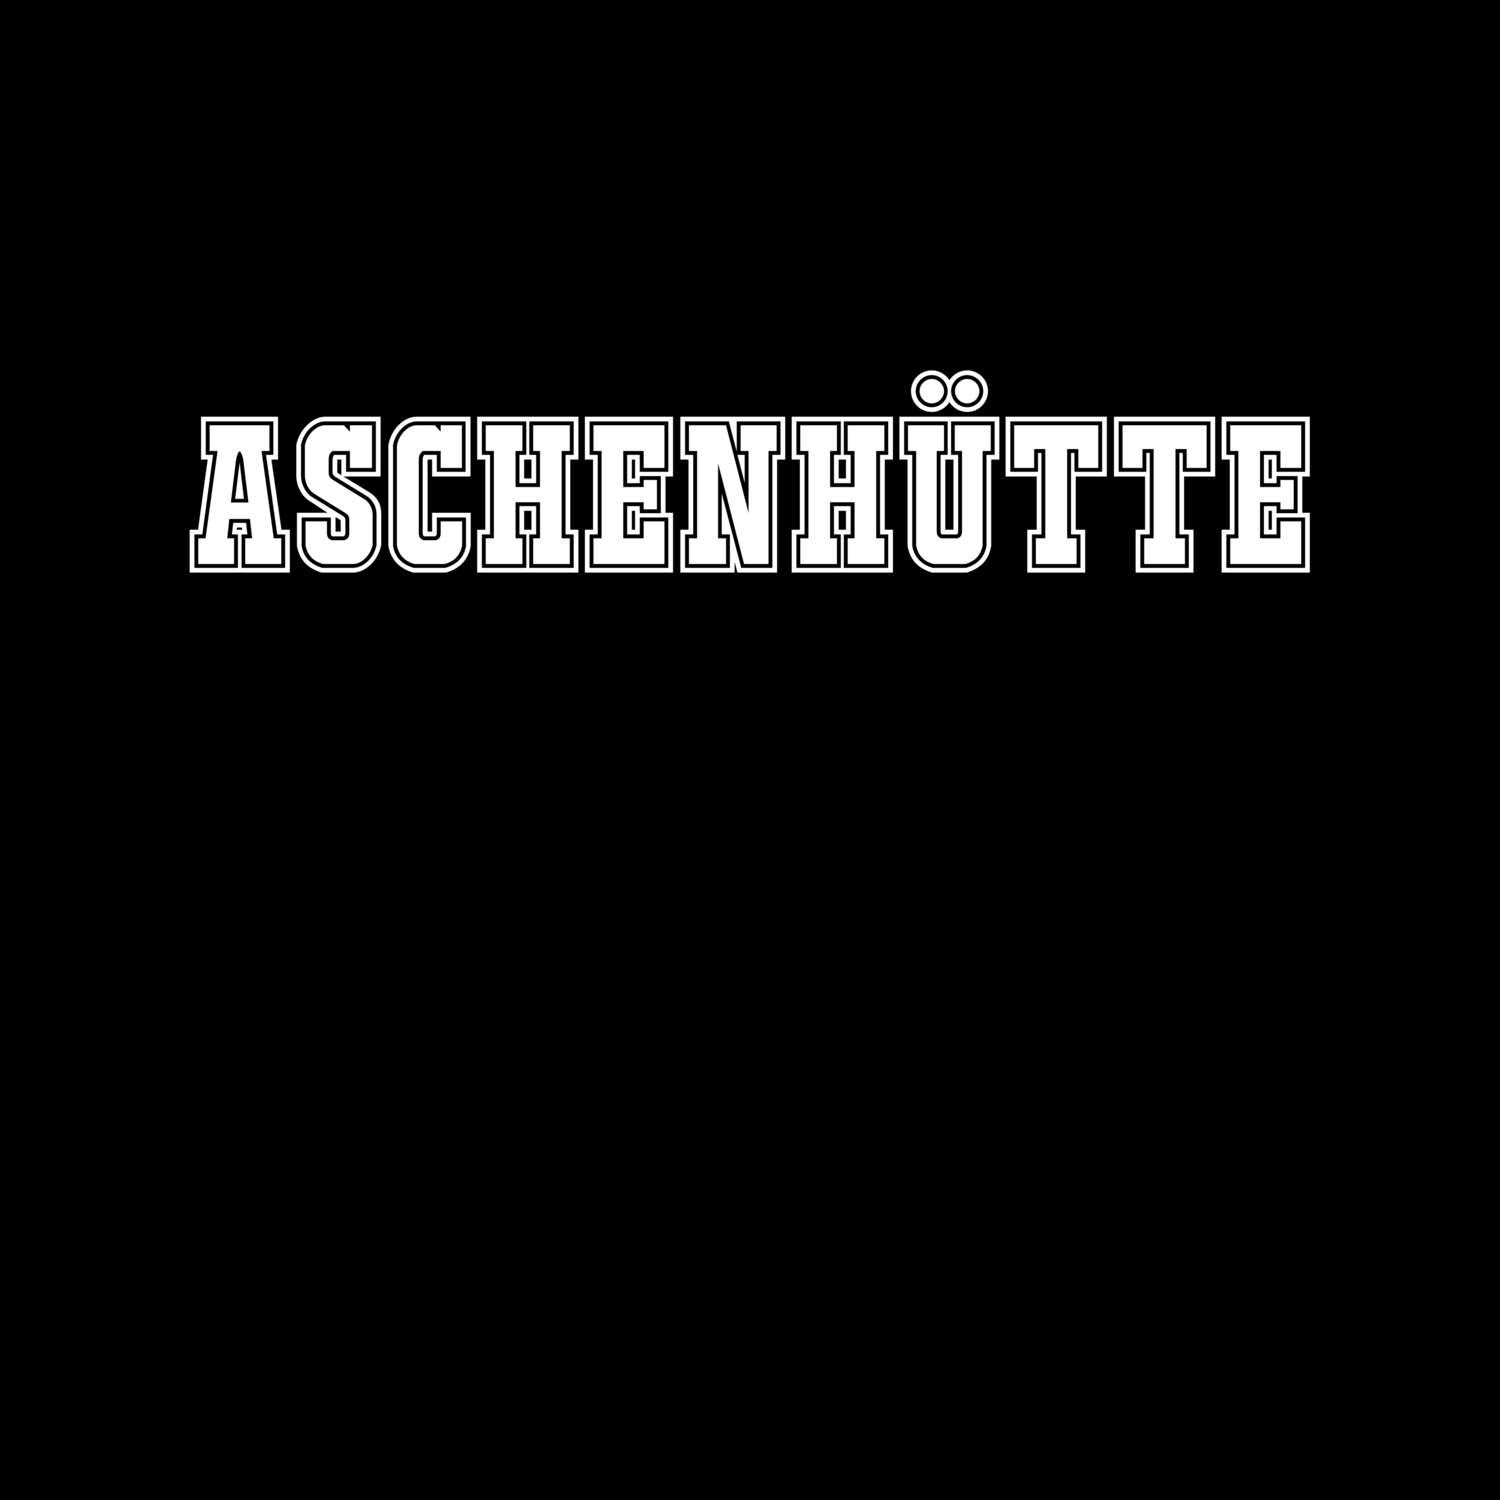 Aschenhütte T-Shirt »Classic«